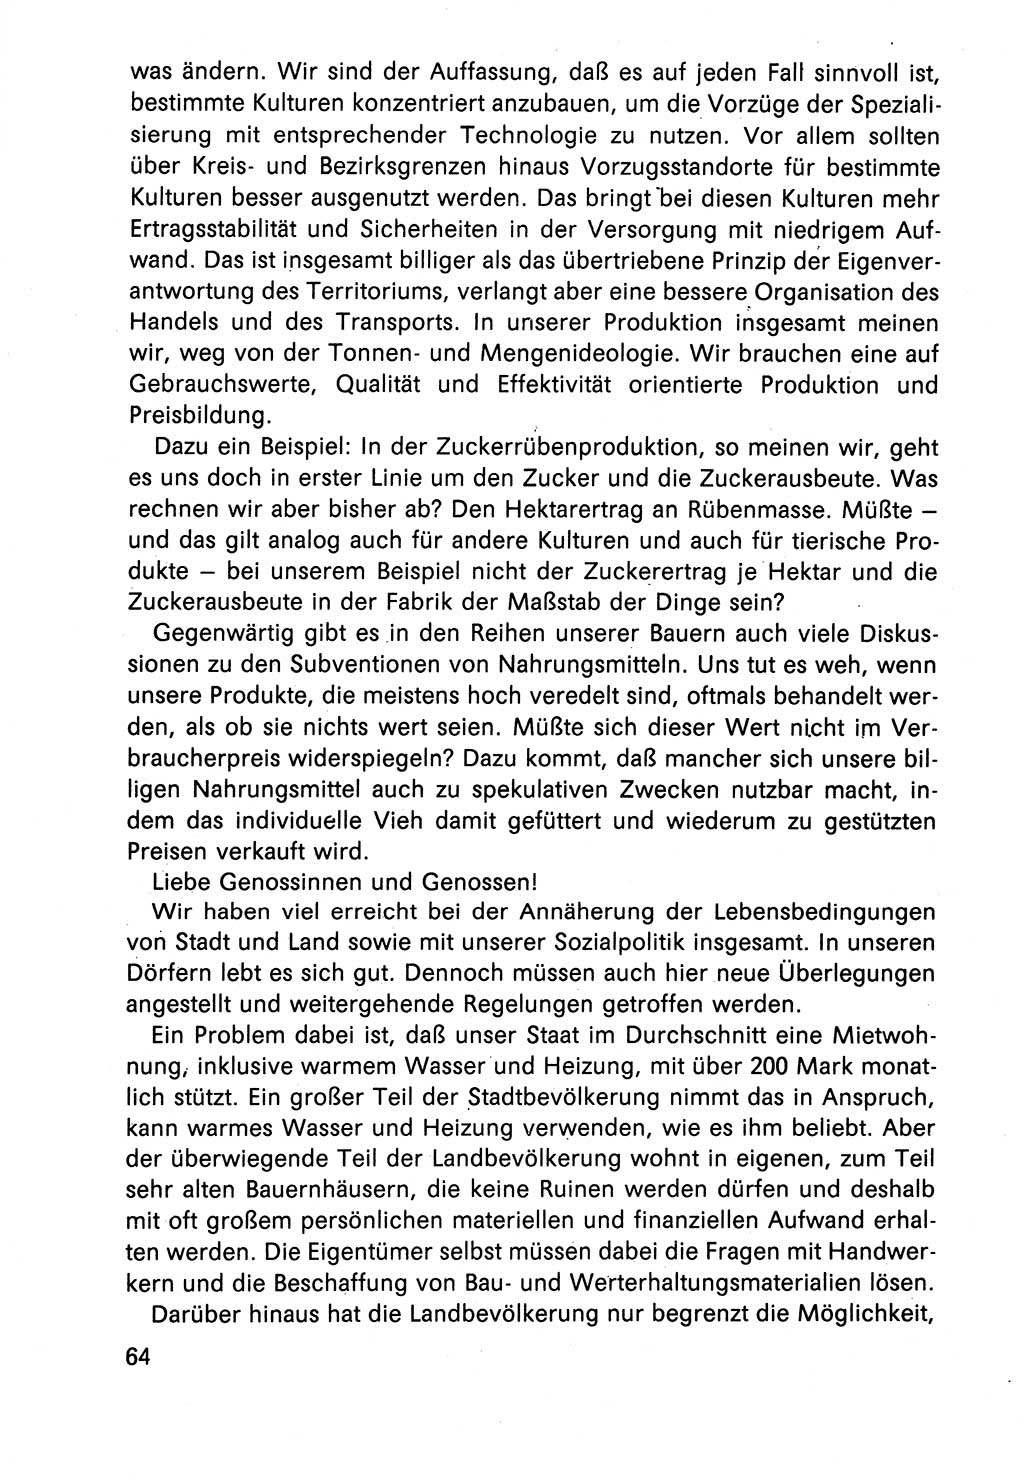 Diskussionsbeiträge, 10. Tagung des ZK (Zentralkomitee) der SED (Sozialistische Einheitspartei Deutschlands) [Deutsche Demokratische Republik (DDR)] 1989, Seite 64 (Disk.-Beitr. 10. Tg. ZK SED DDR 1989, S. 64)